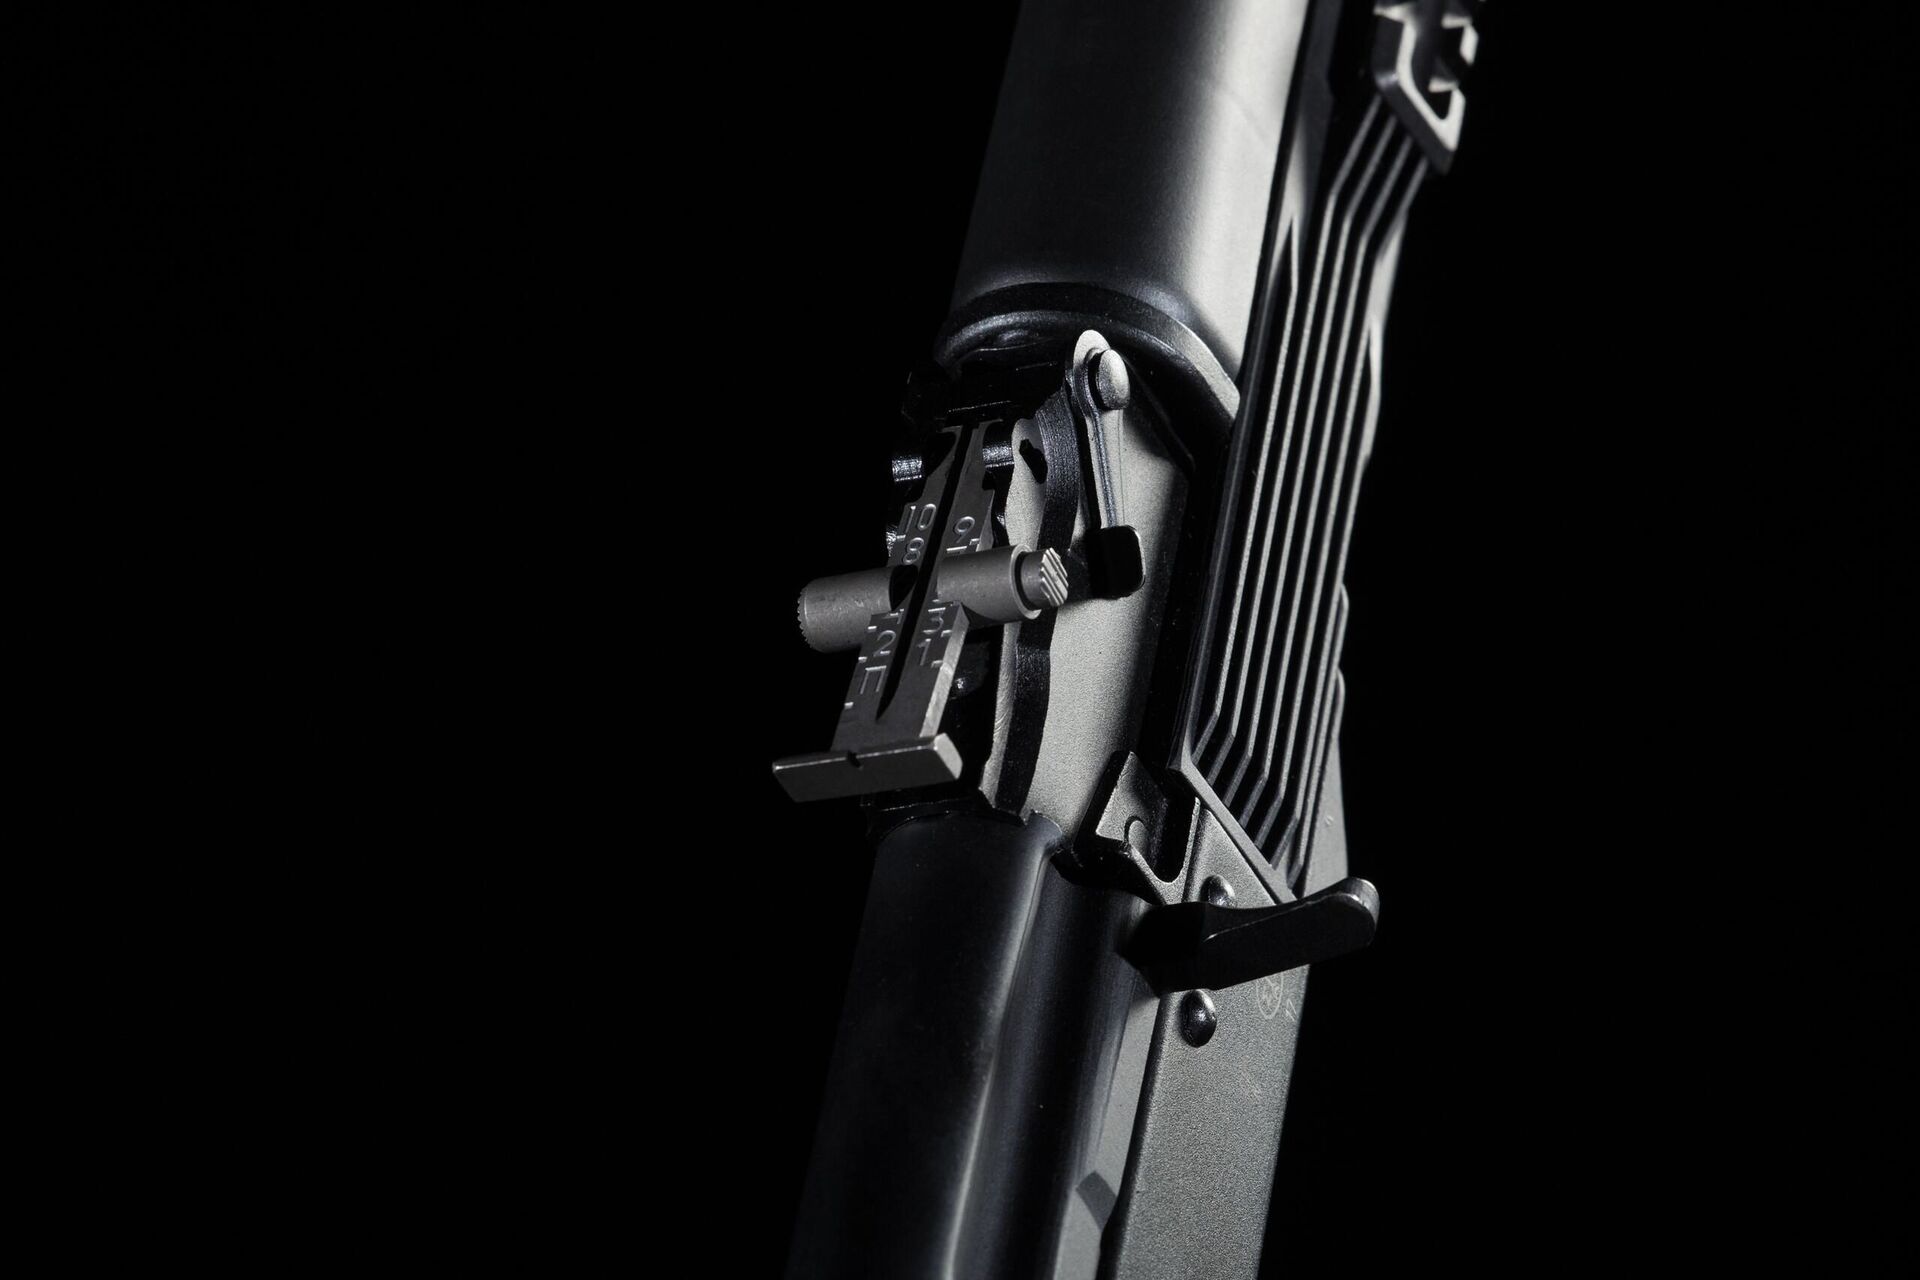 Kalashnikov bắt đầu bán một loại súng nòng trơn mới - Sputnik Việt Nam, 1920, 08.02.2021